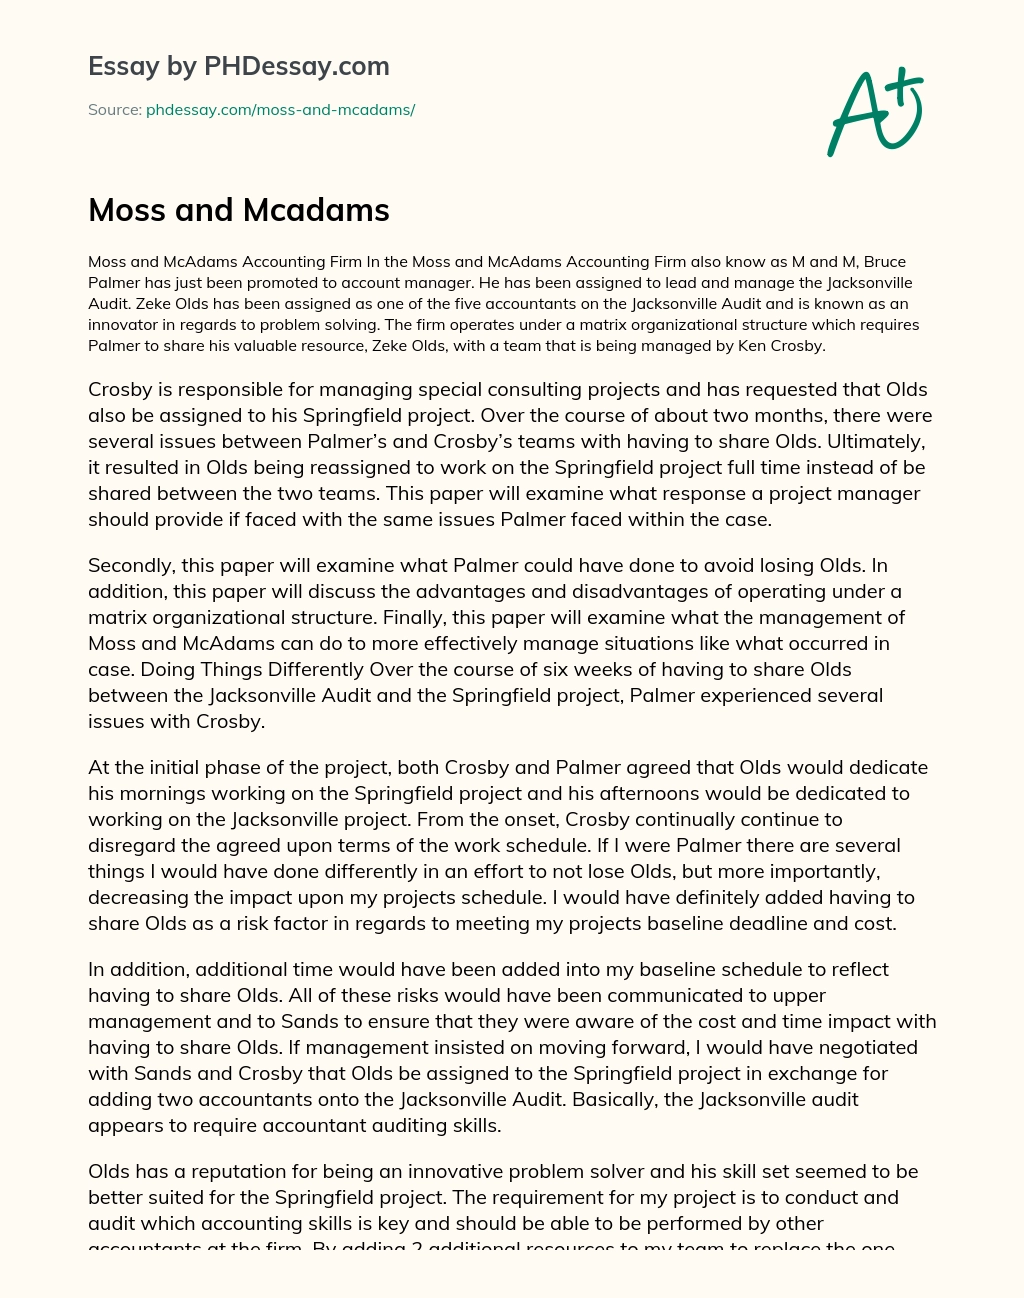 Moss and Mcadams essay